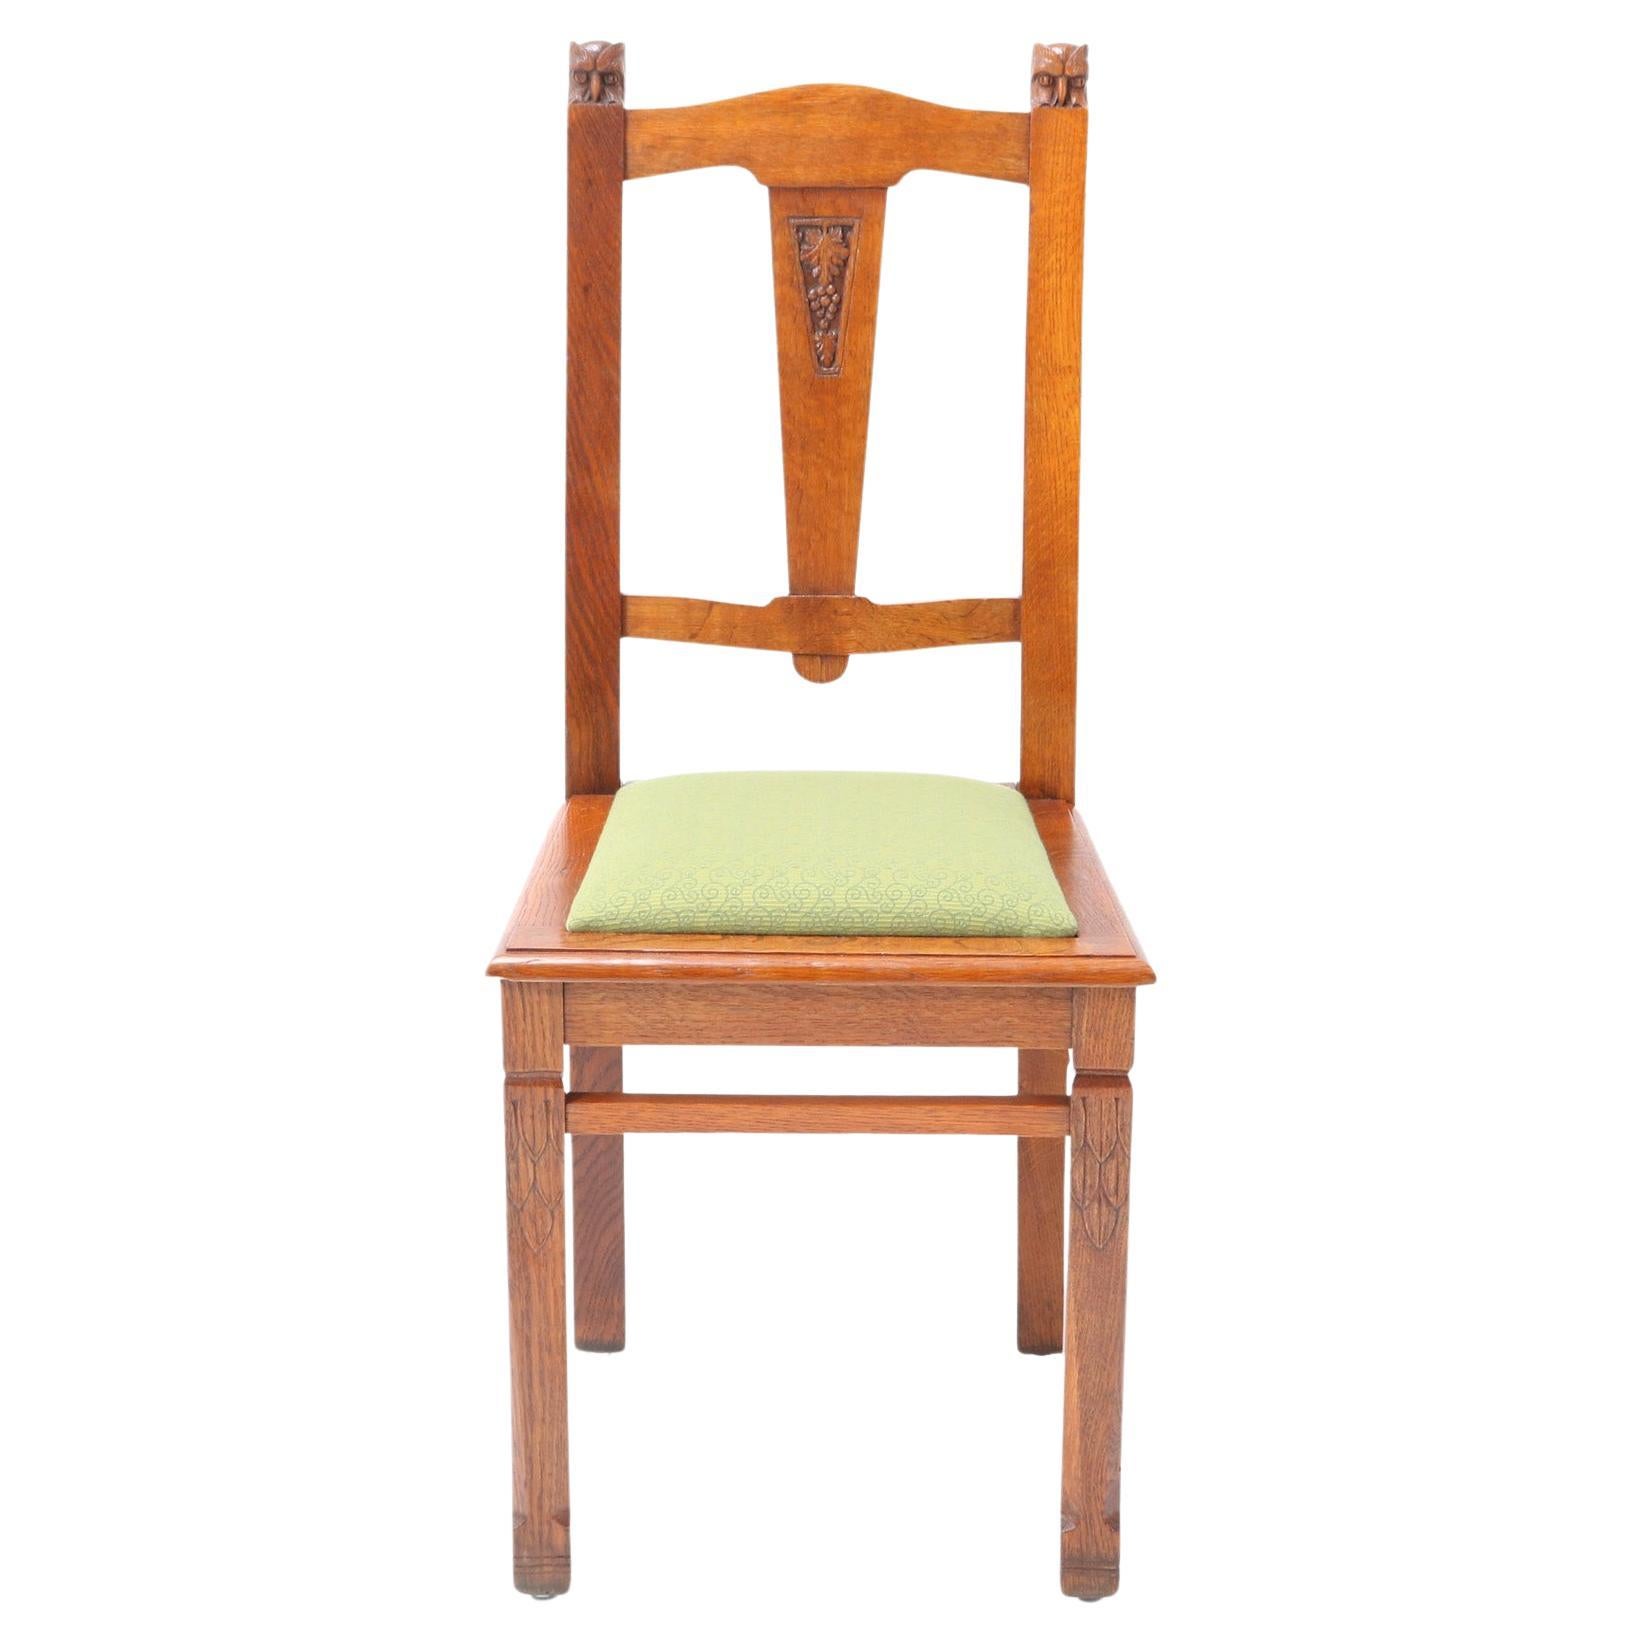 Oak Arts & Crafts Art Nouveau Side Chair by Kobus de Graaff, 1900s For Sale